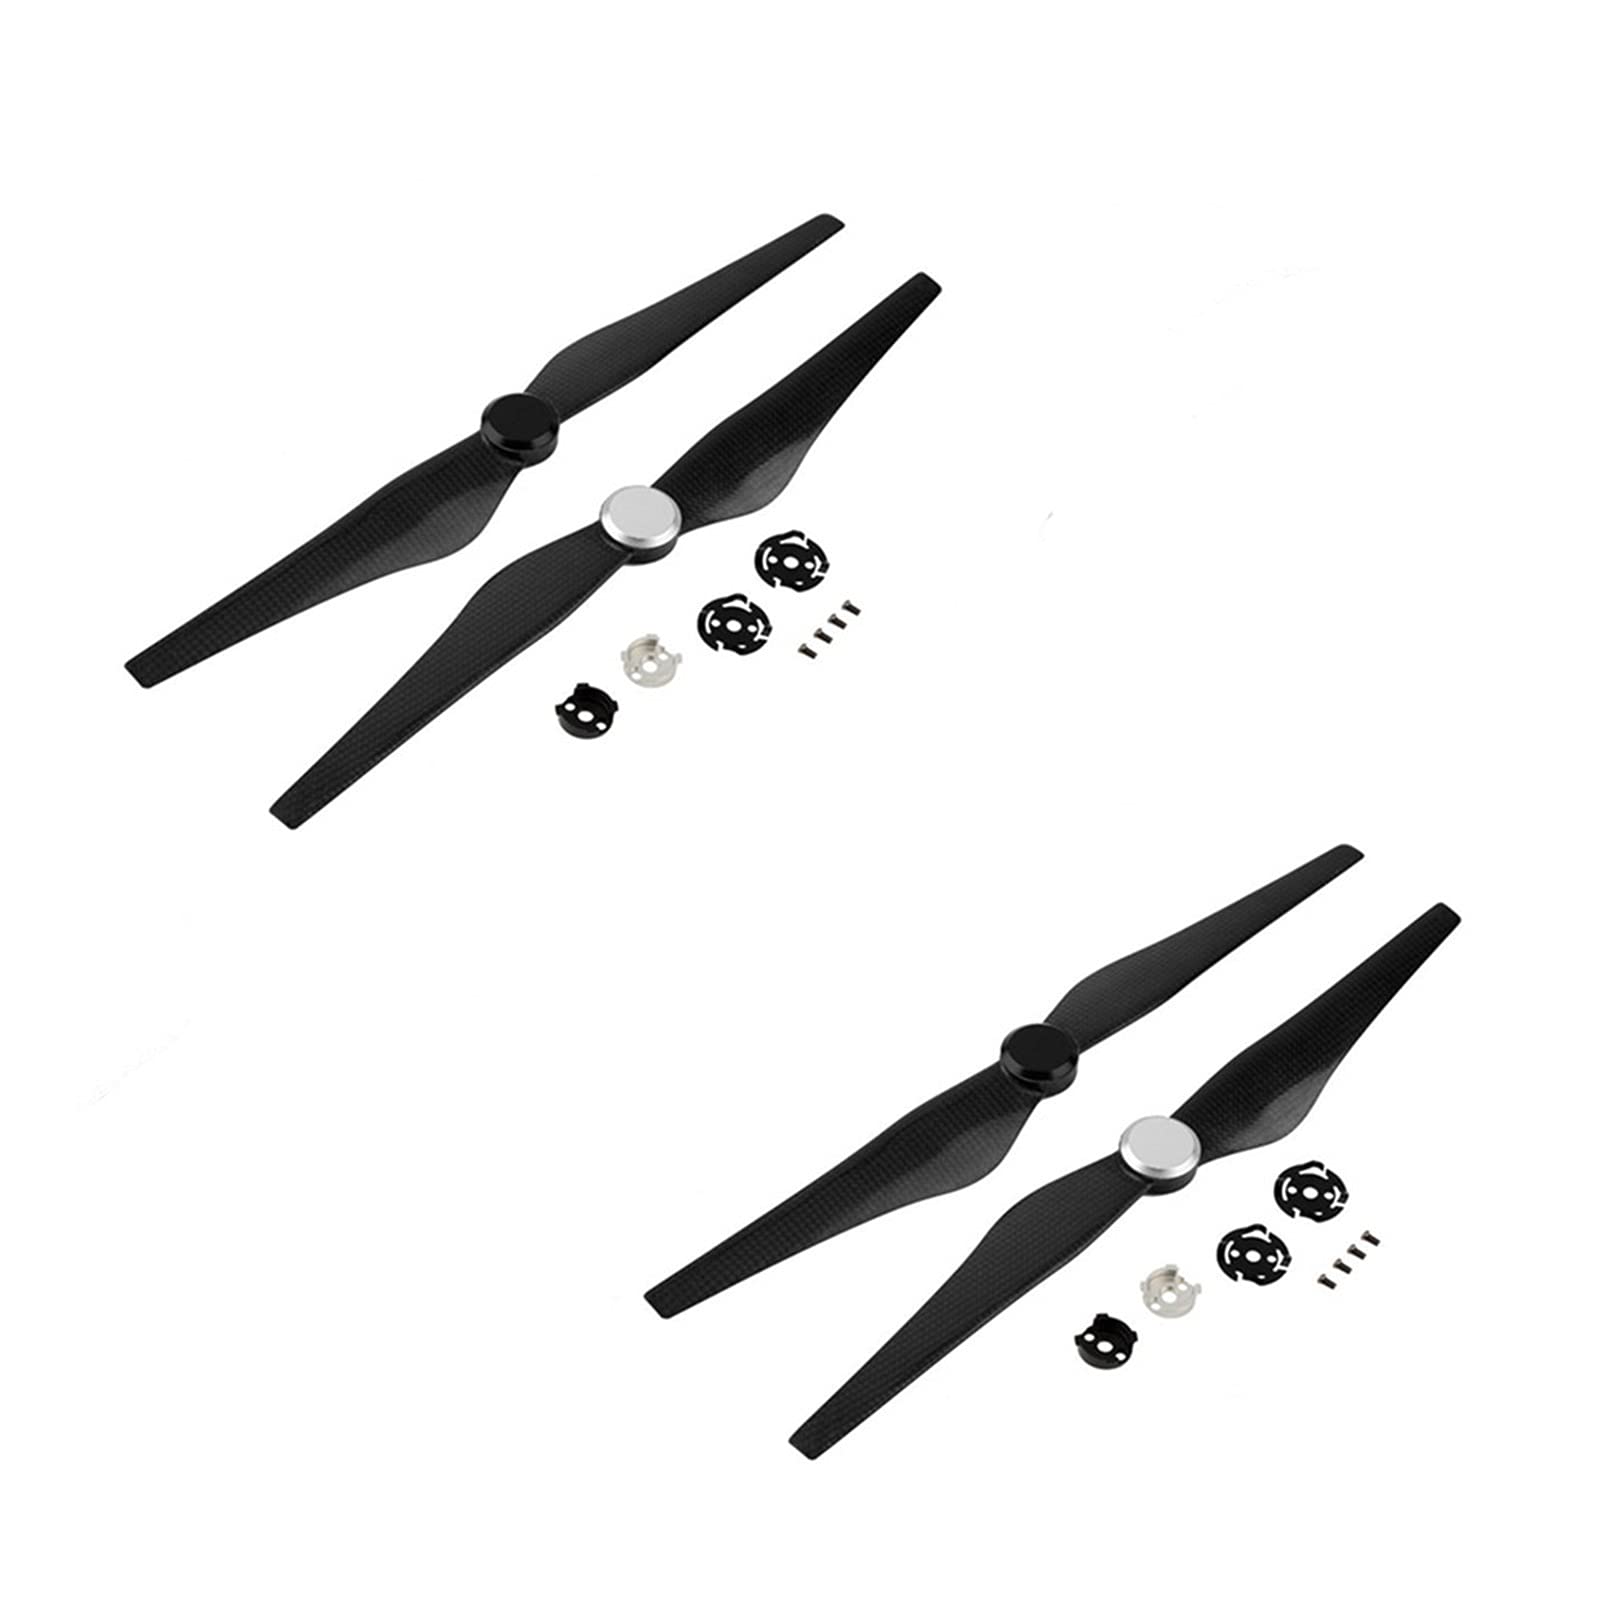 VAKIRA 1345S Paddle Blades Propeller, for Inspire 1 Carbonfaserverstärkter Propeller-Schnellspanner Ersatzrotoren für Drohnen(Two pairs) von VAKIRA